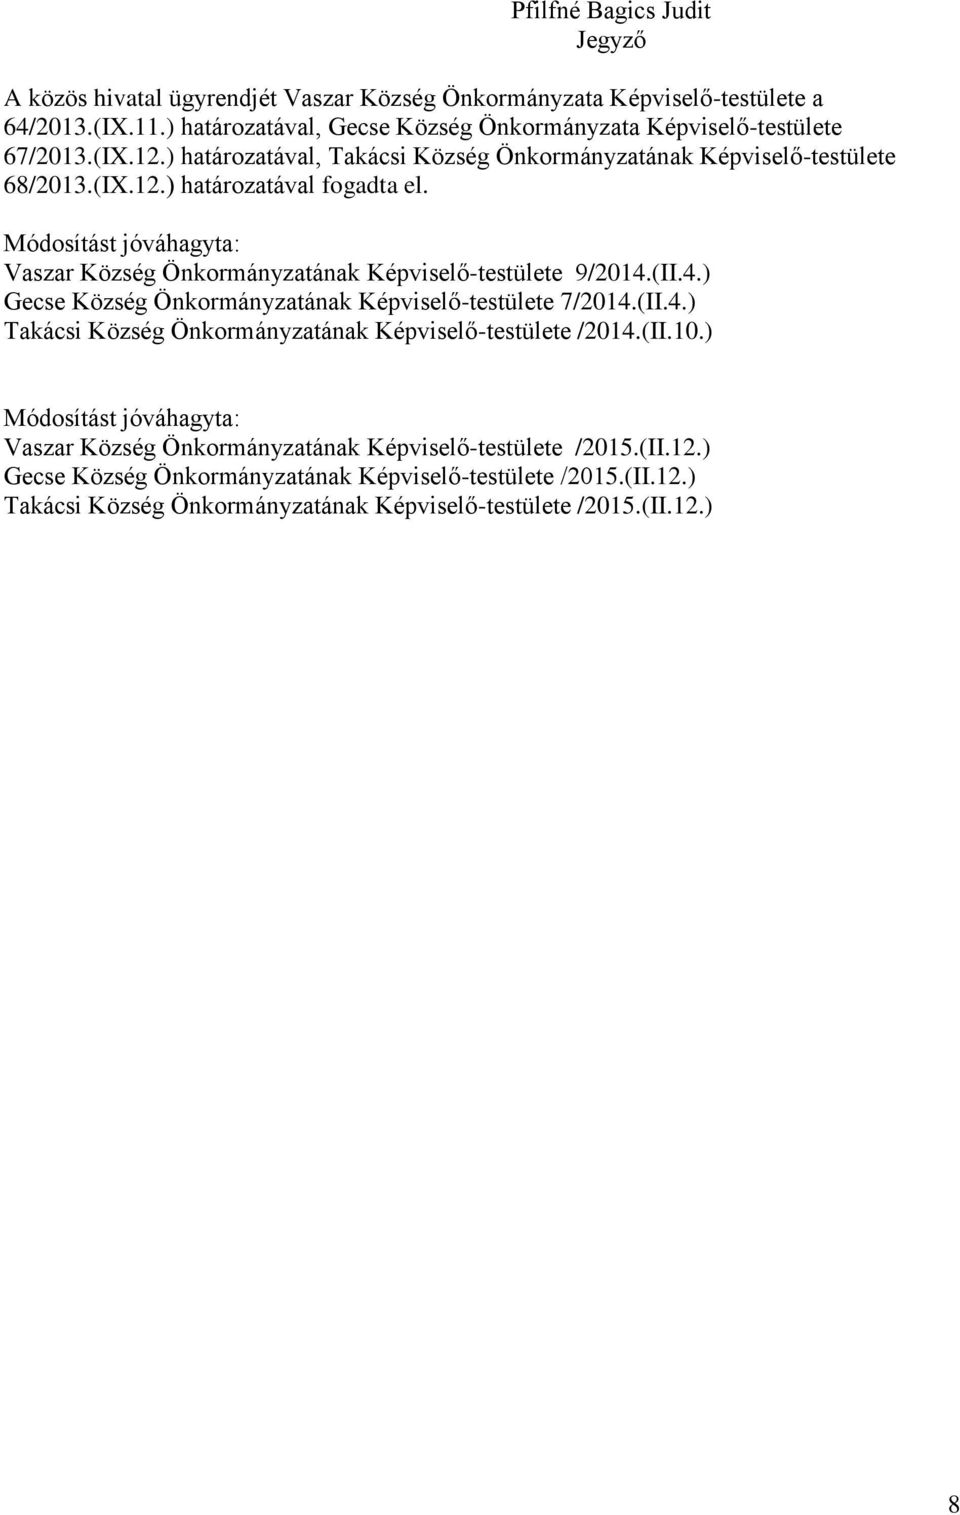 Módosítást jóváhagyta: Vaszar Község Önkormányzatának Képviselő-testülete 9/2014.(II.4.) Gecse Község Önkormányzatának Képviselő-testülete 7/2014.(II.4.) Takácsi Község Önkormányzatának Képviselő-testülete /2014.